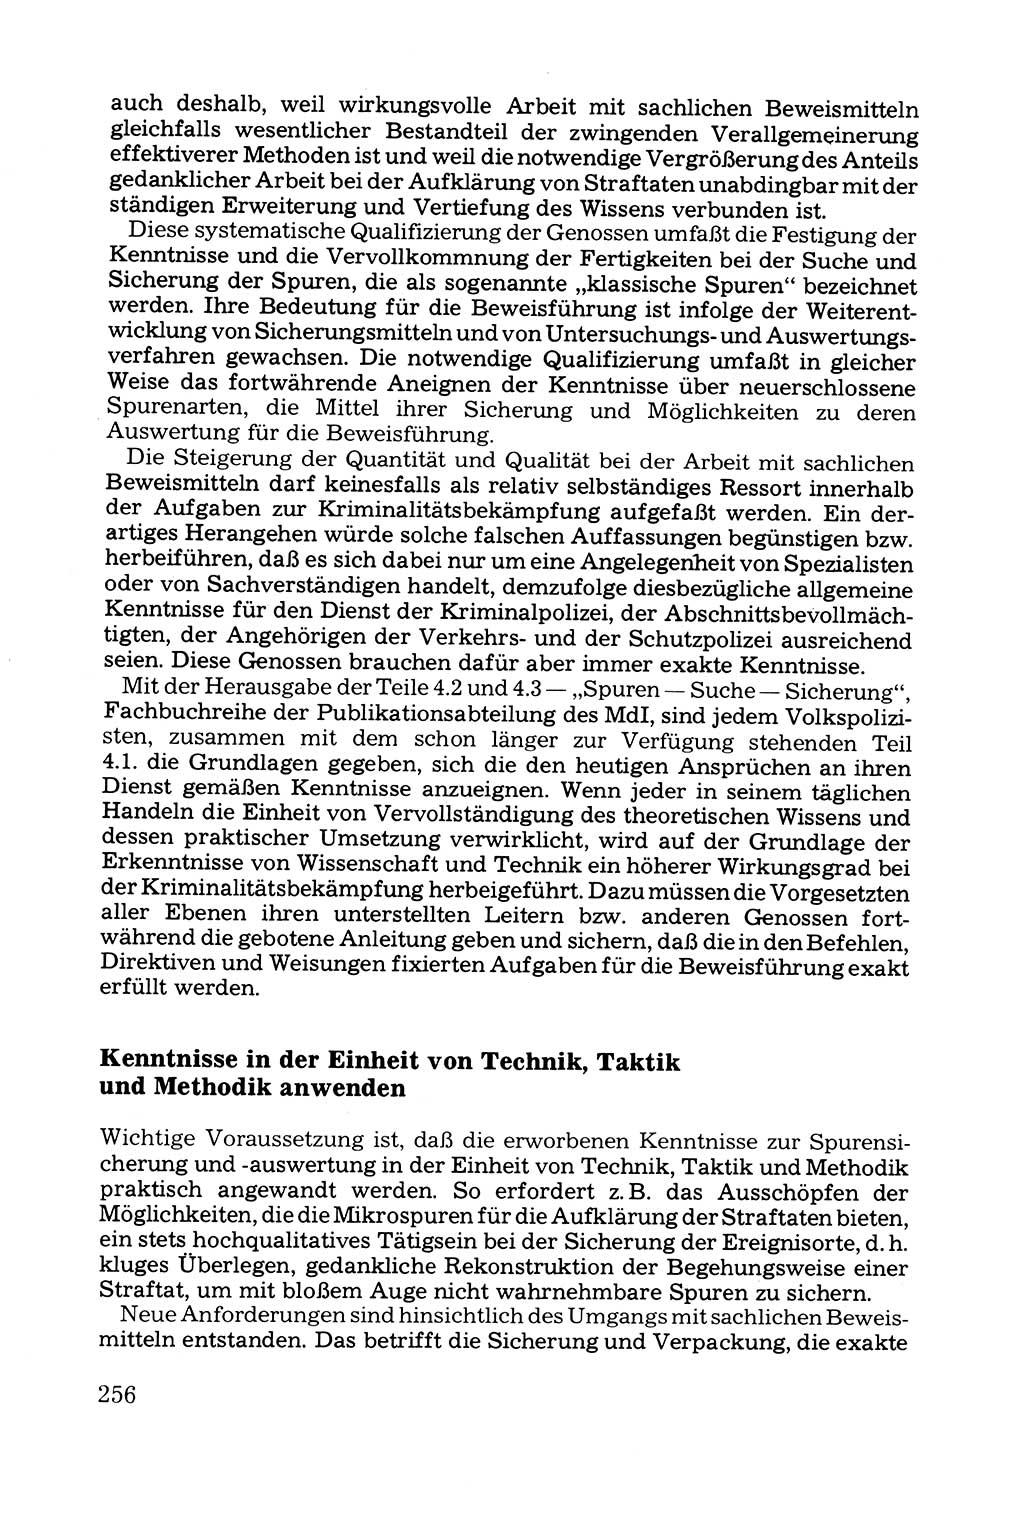 Grundfragen der Beweisführung im Ermittlungsverfahren [Deutsche Demokratische Republik (DDR)] 1980, Seite 256 (Bws.-Fhrg. EV DDR 1980, S. 256)